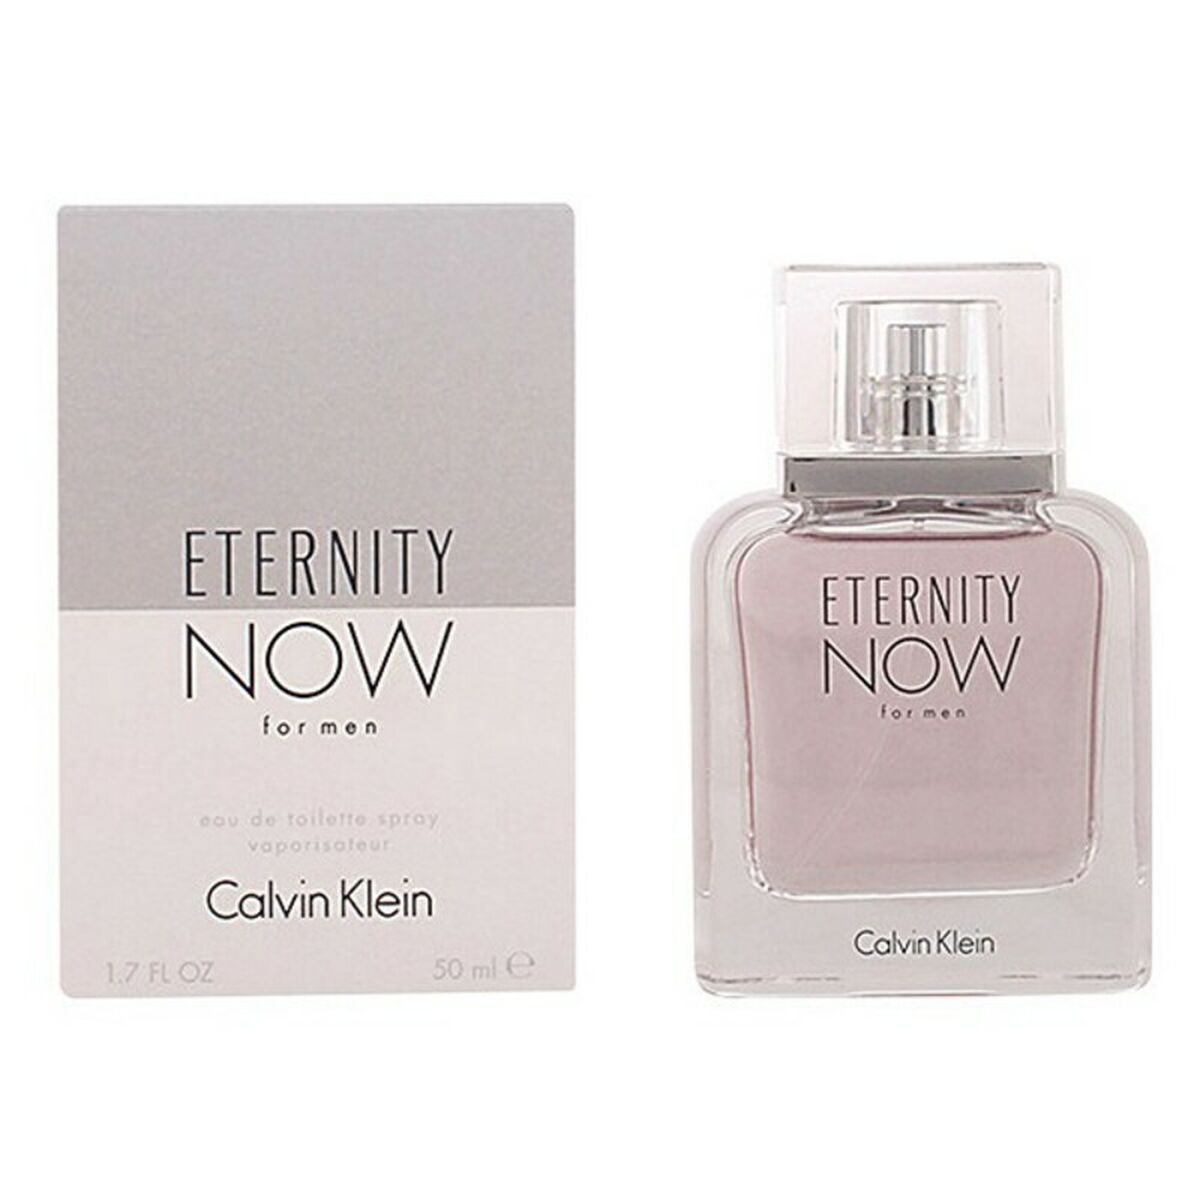 Men's Perfume Eternity Now Calvin Klein EDT